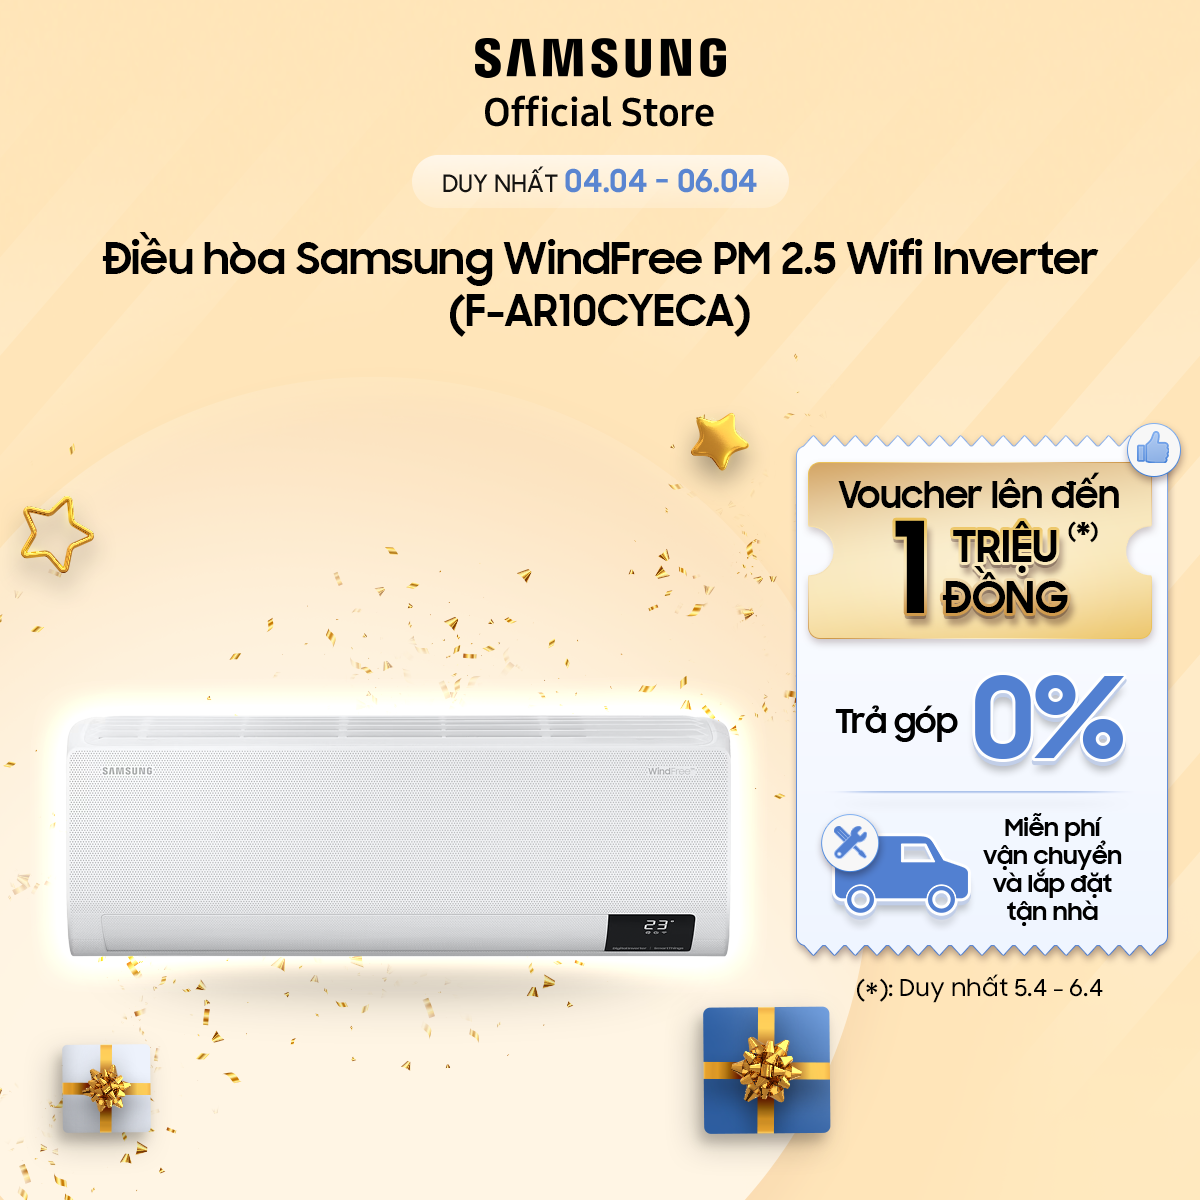 Điều hòa Samsung WindFree PM 2.5 Wifi Inverter